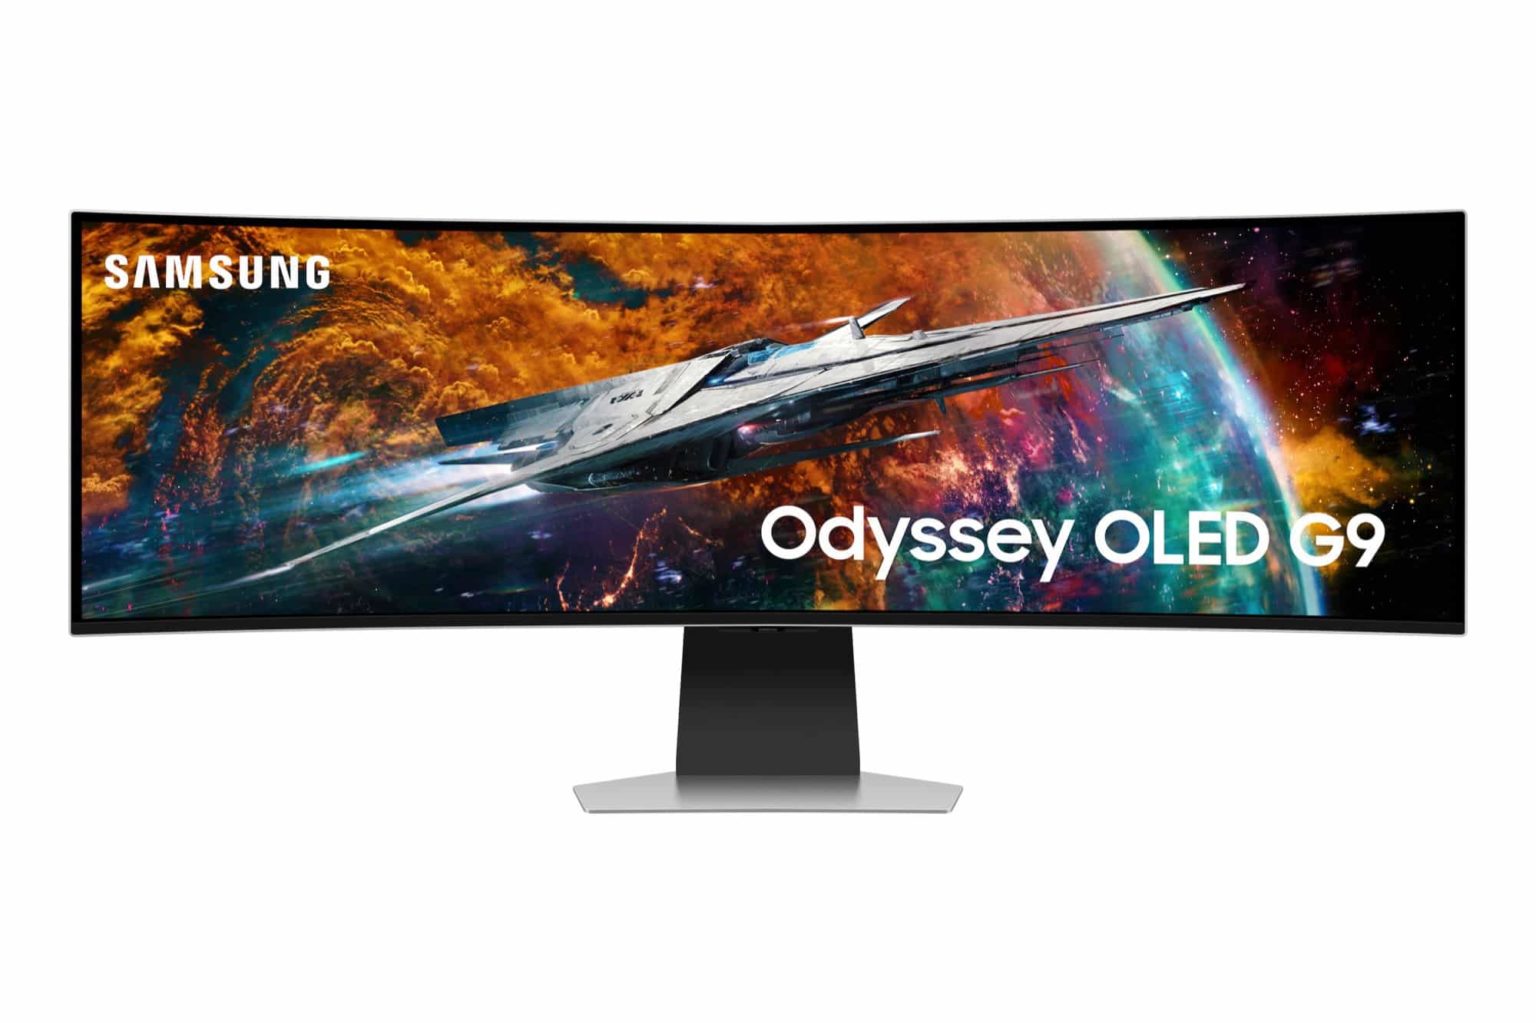 Samsung Odyssey OLED G9 : Un nouveau chapitre dans le jeu OLED